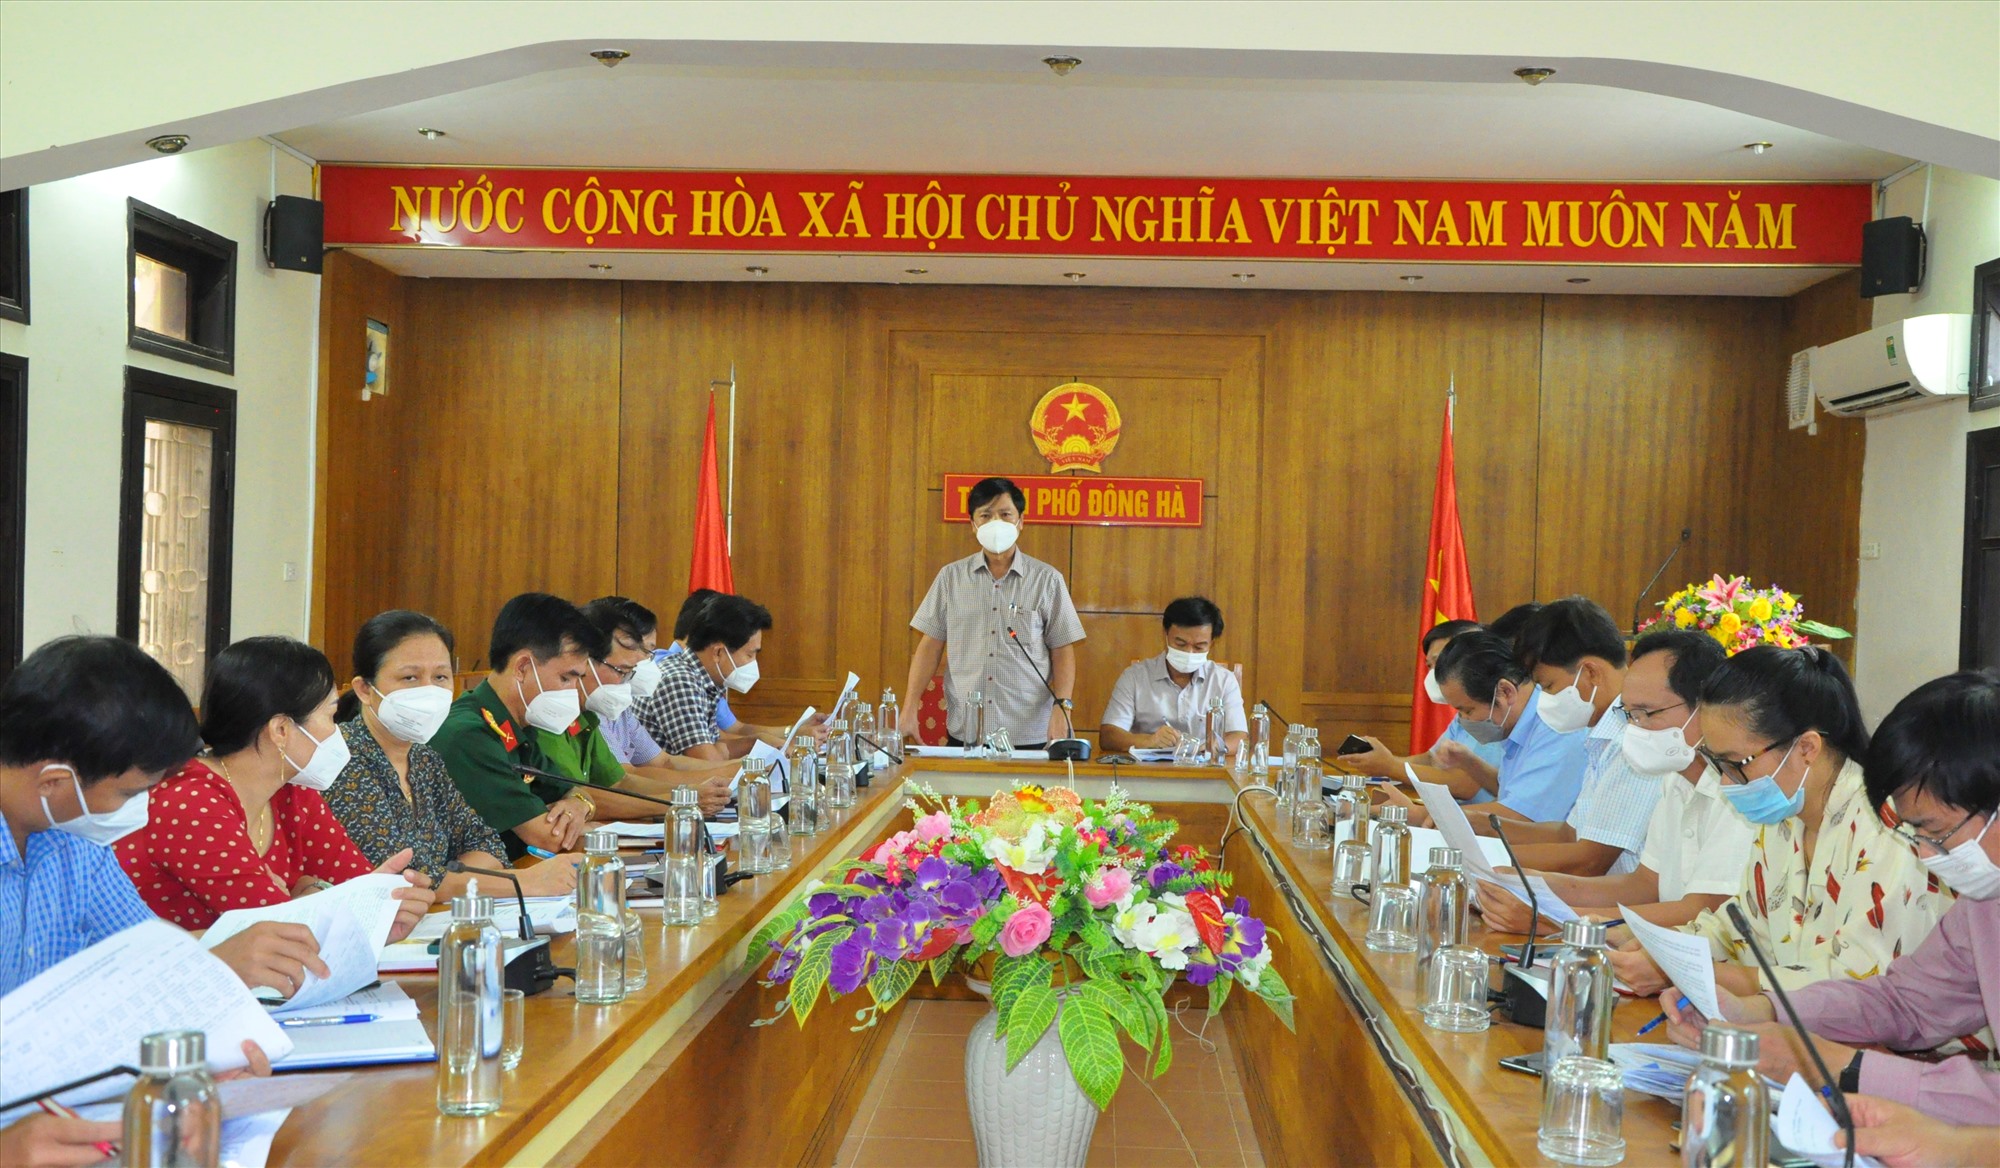 Phó Chủ tịch UBND tỉnh Hoàng Nam khẳng định công tác phòng, chống dịch bệnh trên địa bàn thành phố Đông Hà cần được thực hiện khẩn trương, nghiêm túc, hiệu quả - Ảnh: Q.H